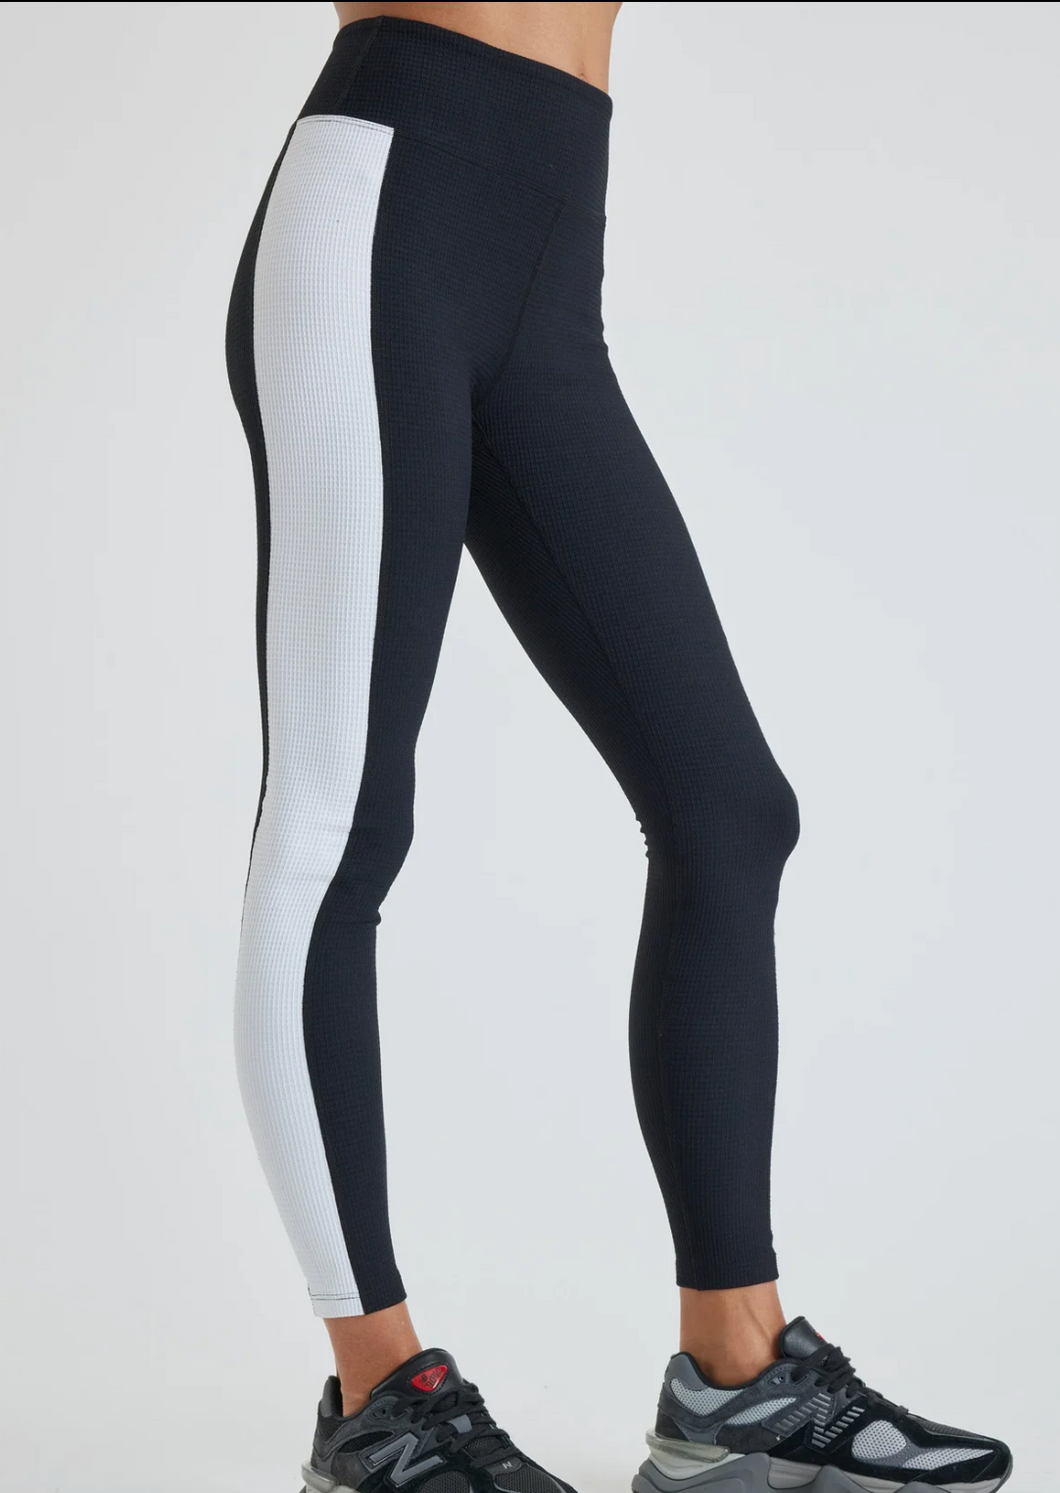 YOS Thermal Tahoe Legging - Black/ White